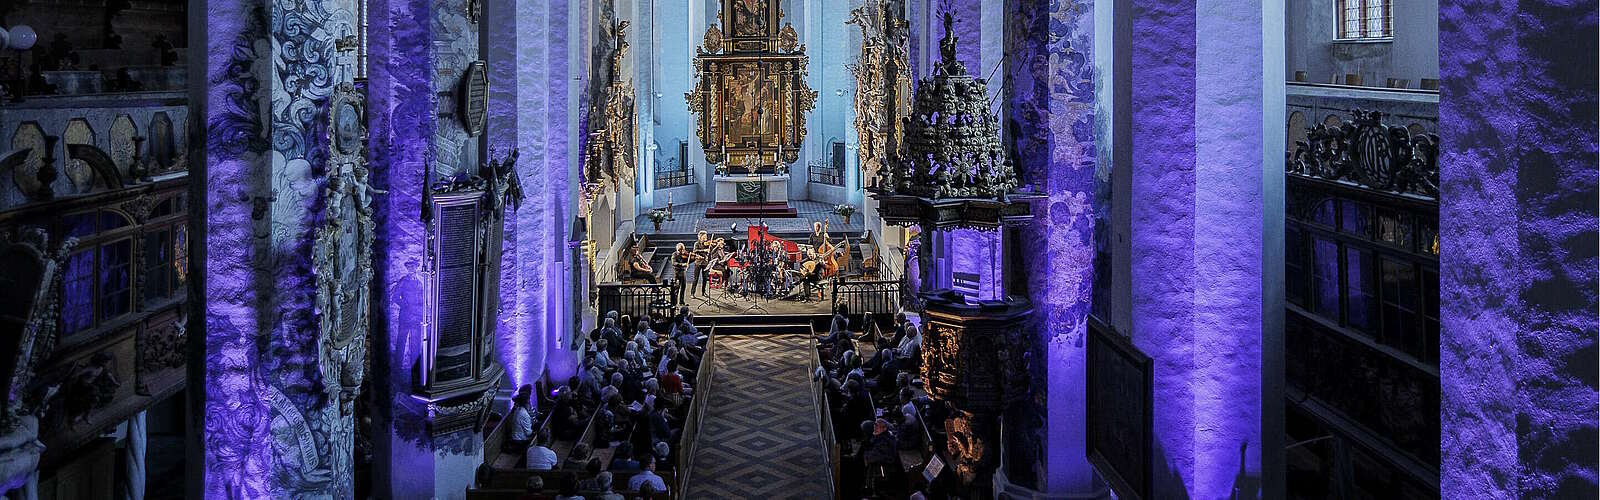 Orchester Il Giardino Armonico in der Sankt-Nikolai-Kirche in Luckau,
        
    

        Foto: Lausitz Festival/Nikolai Schmidt